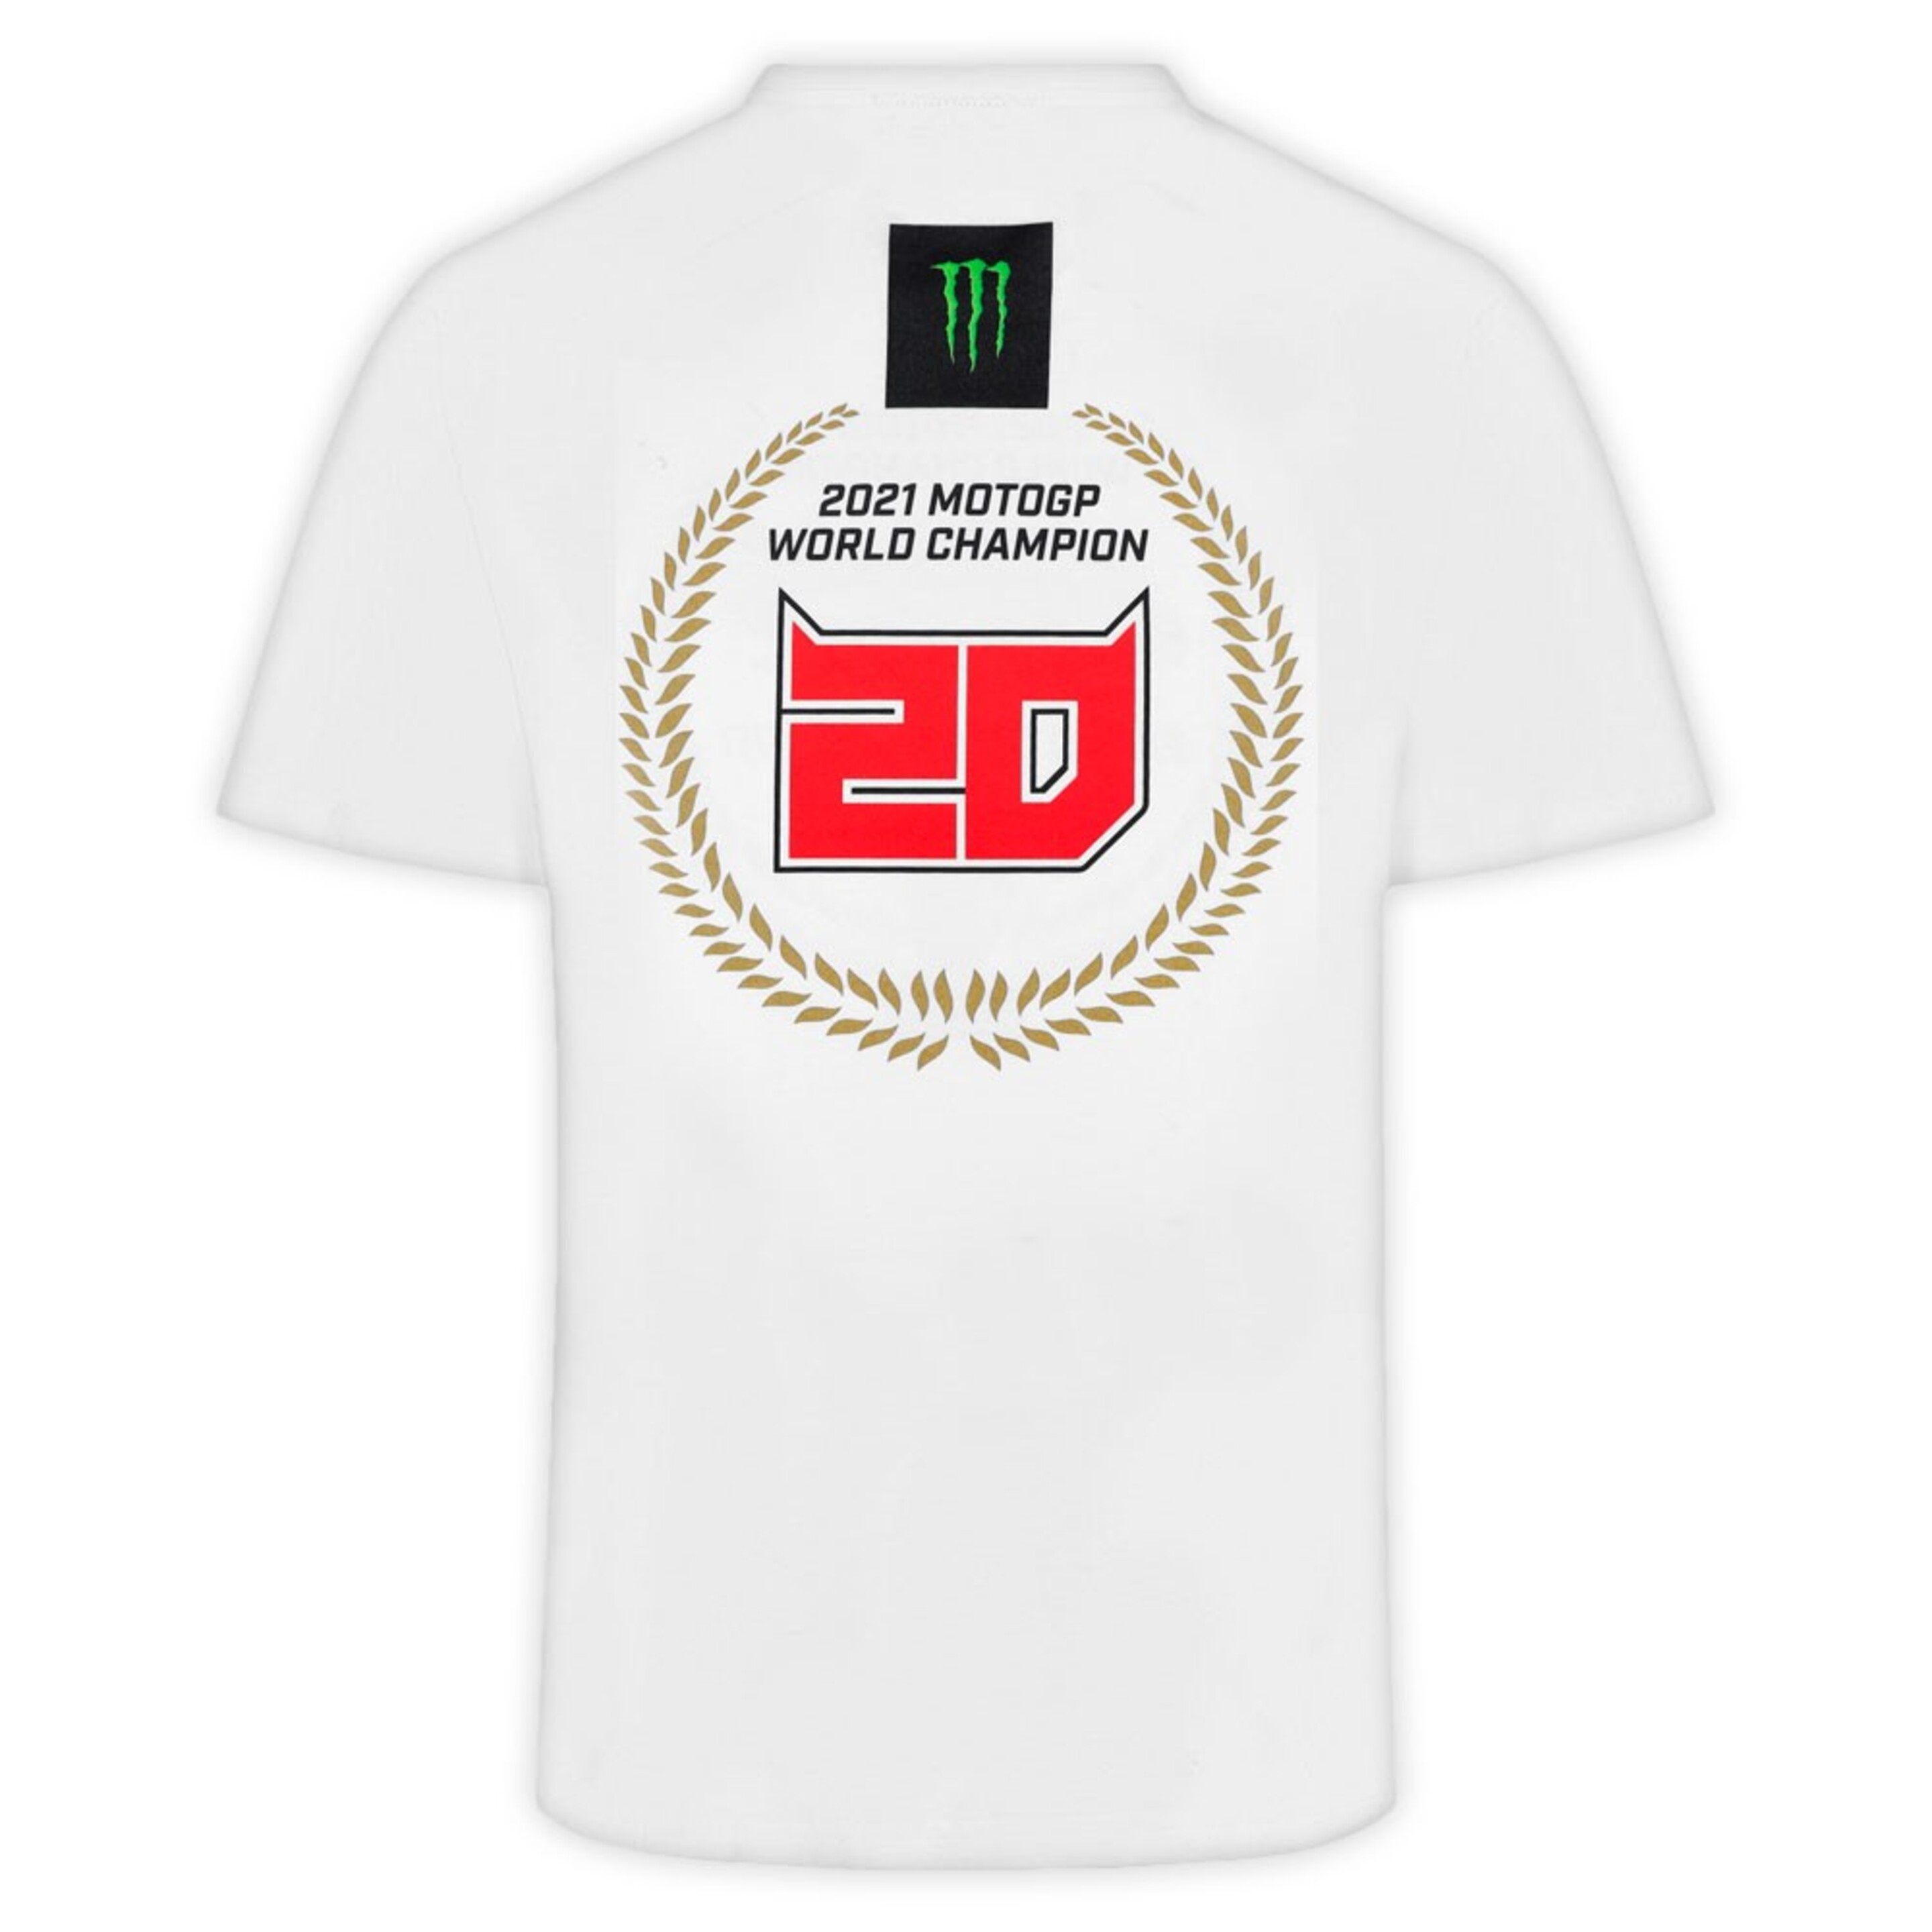 Camiseta Fabio Quartararo Campeón Del Mundo Motogp 2021 - Blanco  MKP